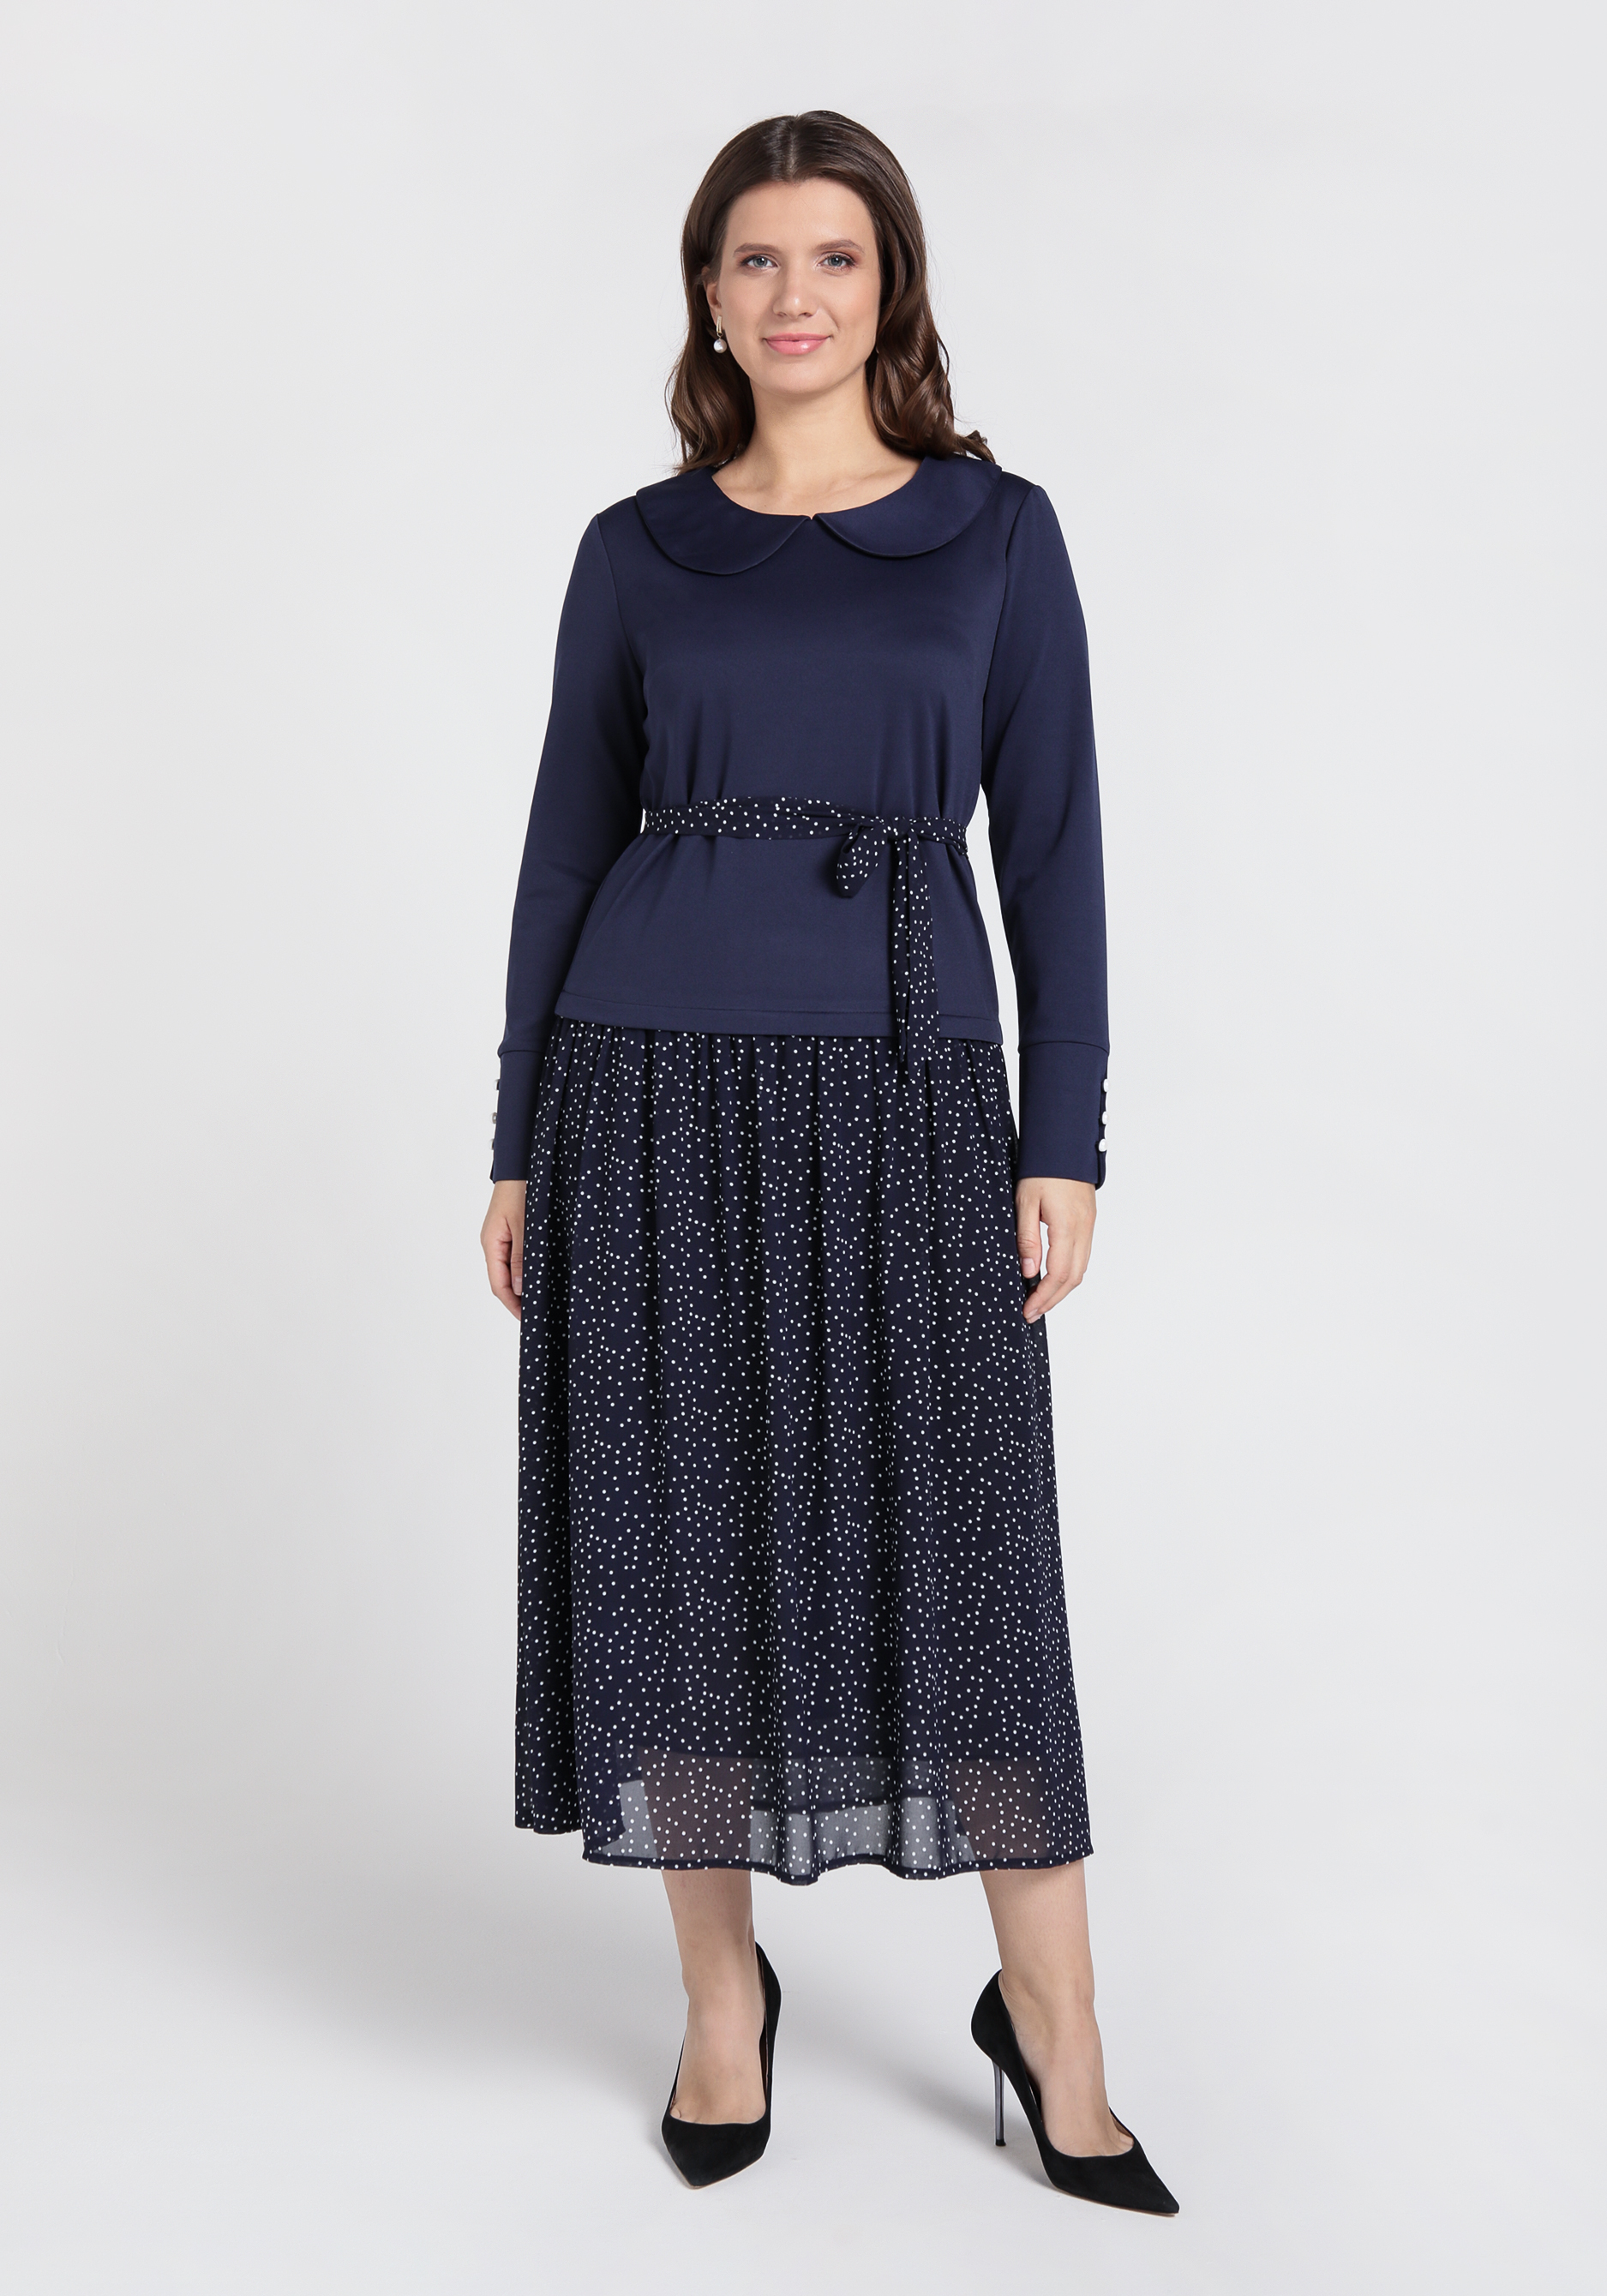 Платье с комбинированной тканью Mio Imperatrice, размер 48, цвет синий - фото 7